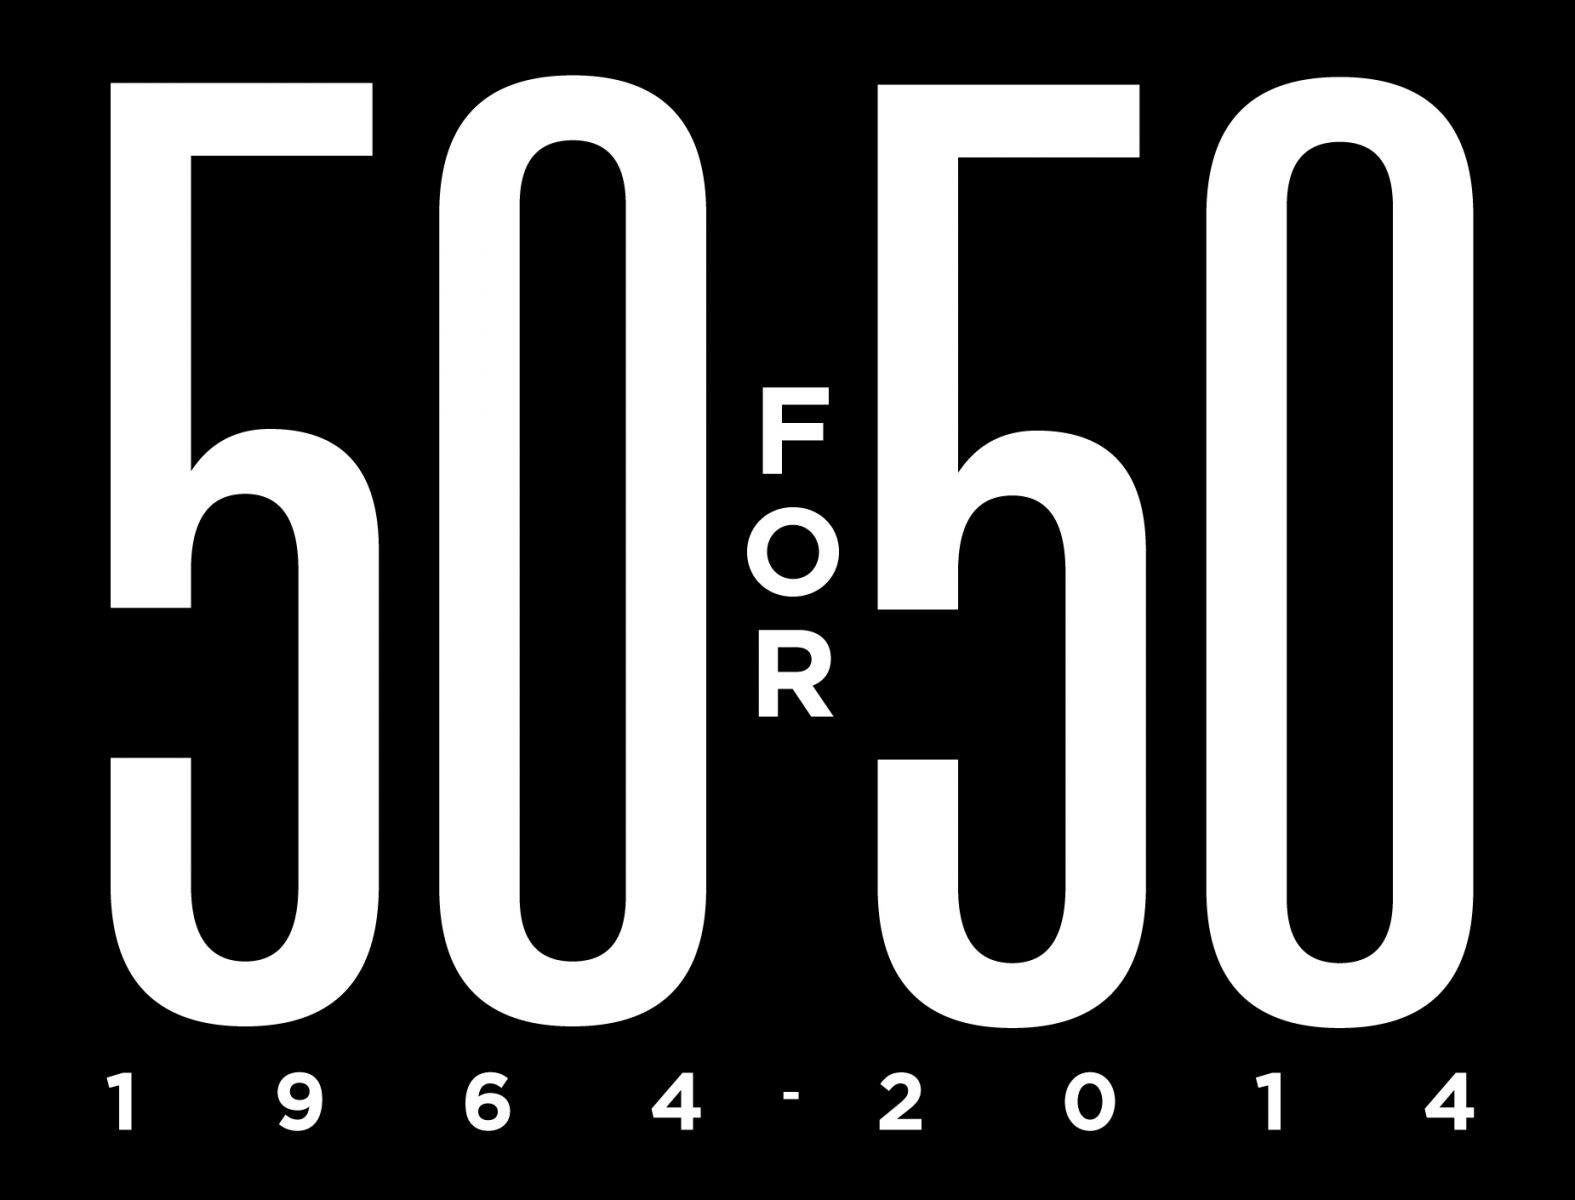 50 for 50 logo